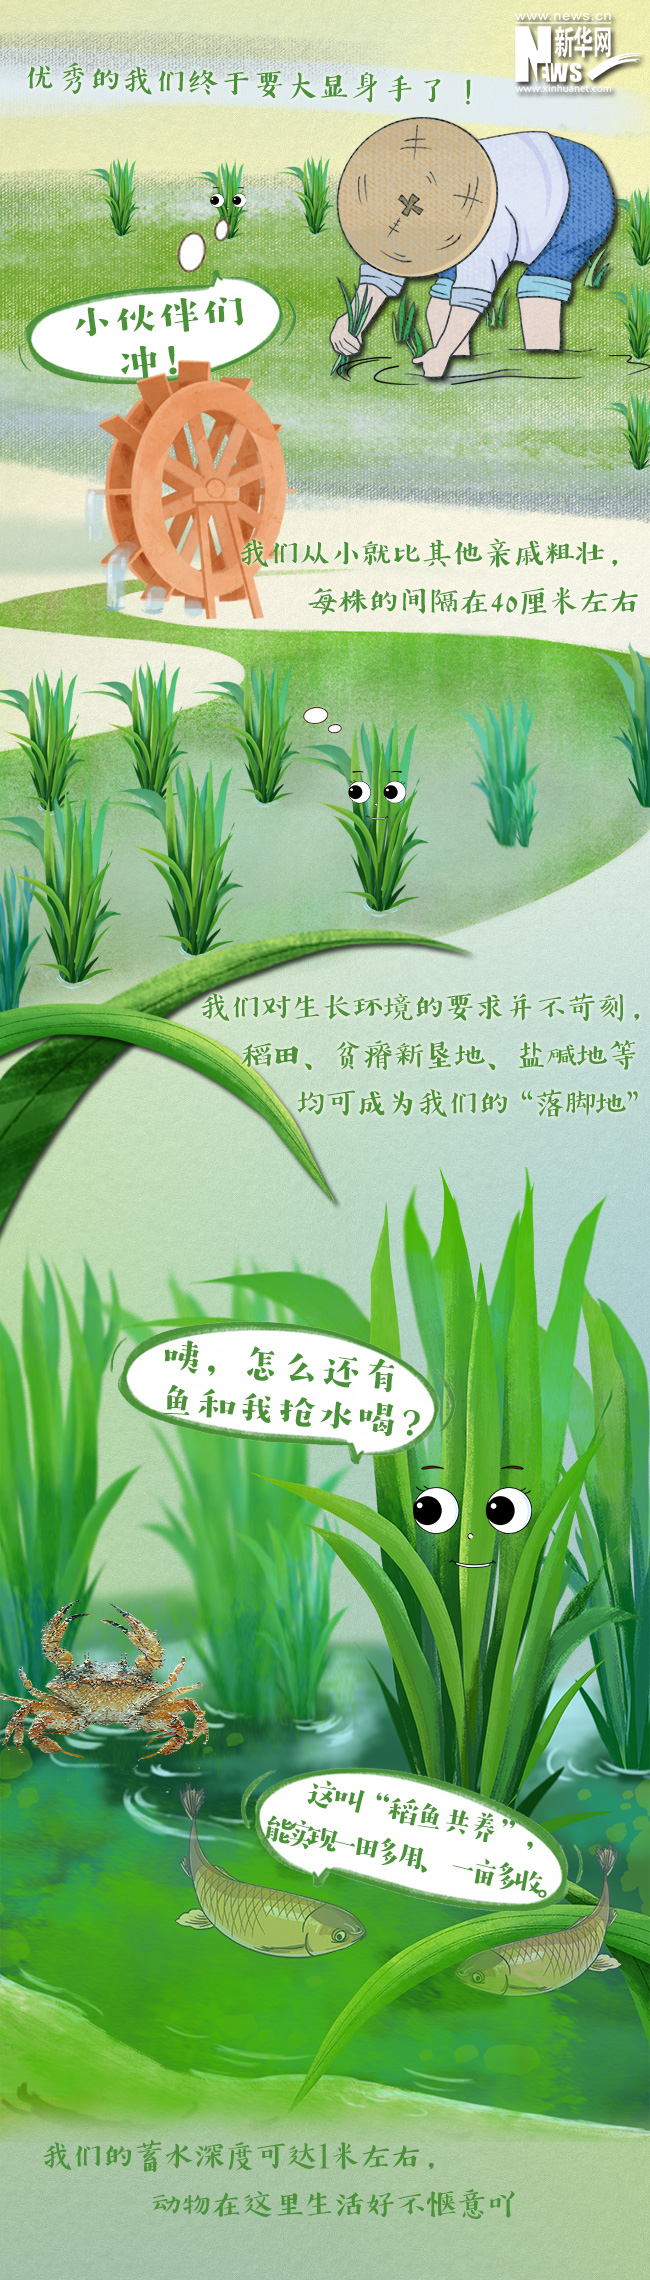 创意漫画丨水稻“尖子生”巨型稻的成长史